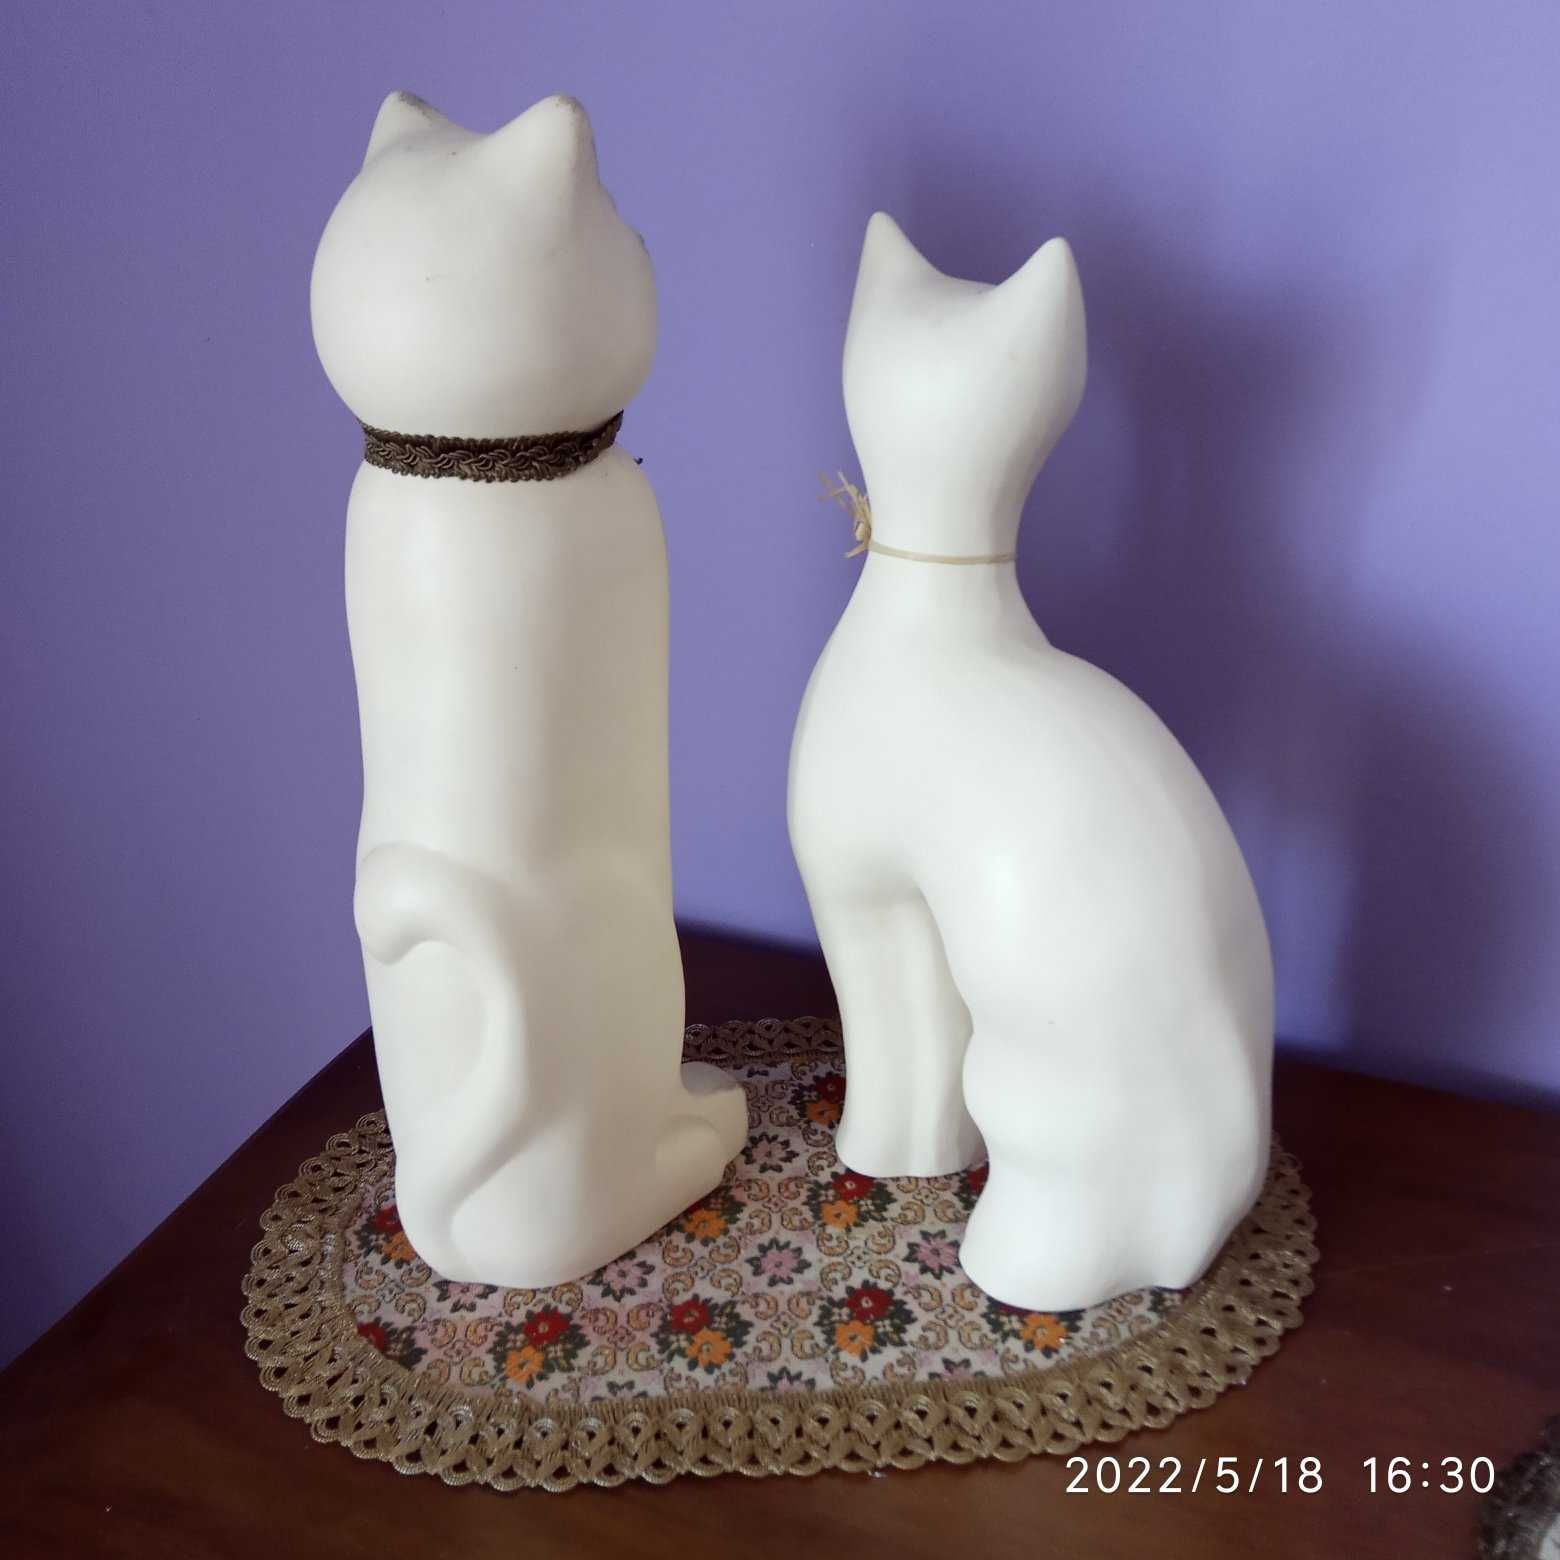 biały kot kotek ceramiczna figura figurka posążek rzeźba